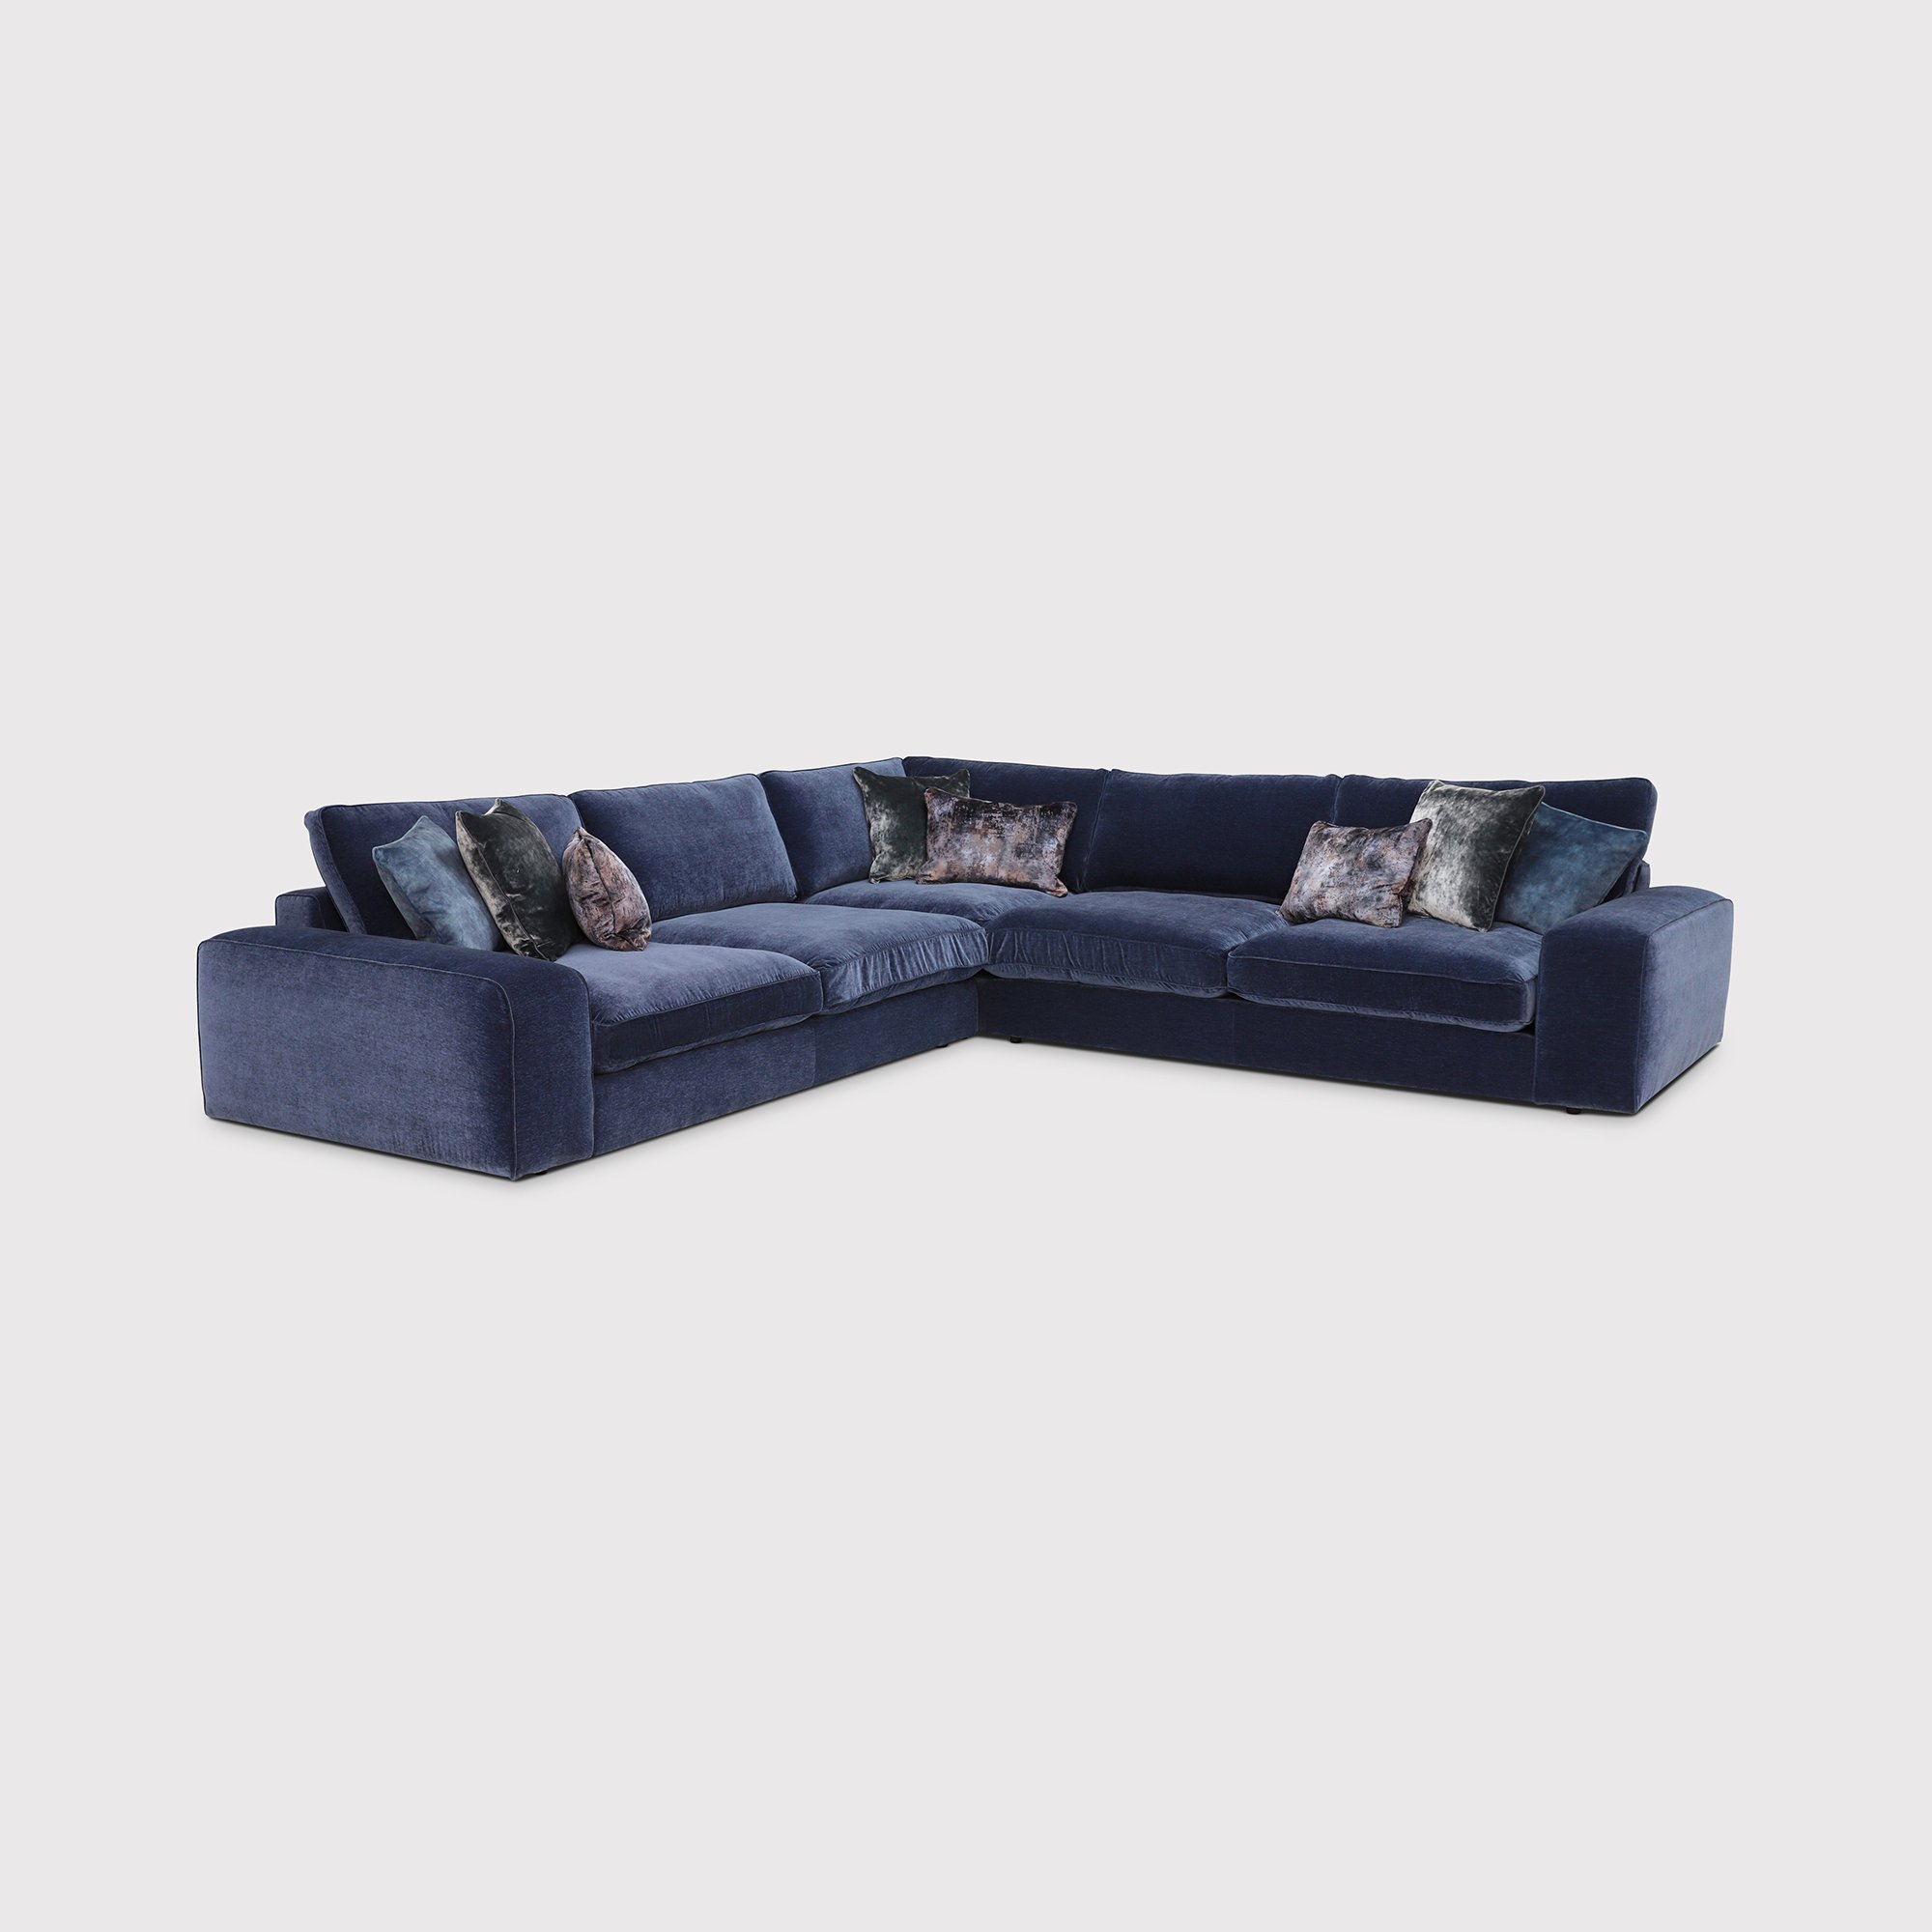 Sasha Large Corner Sofa, Blue Fabric | Barker & Stonehouse